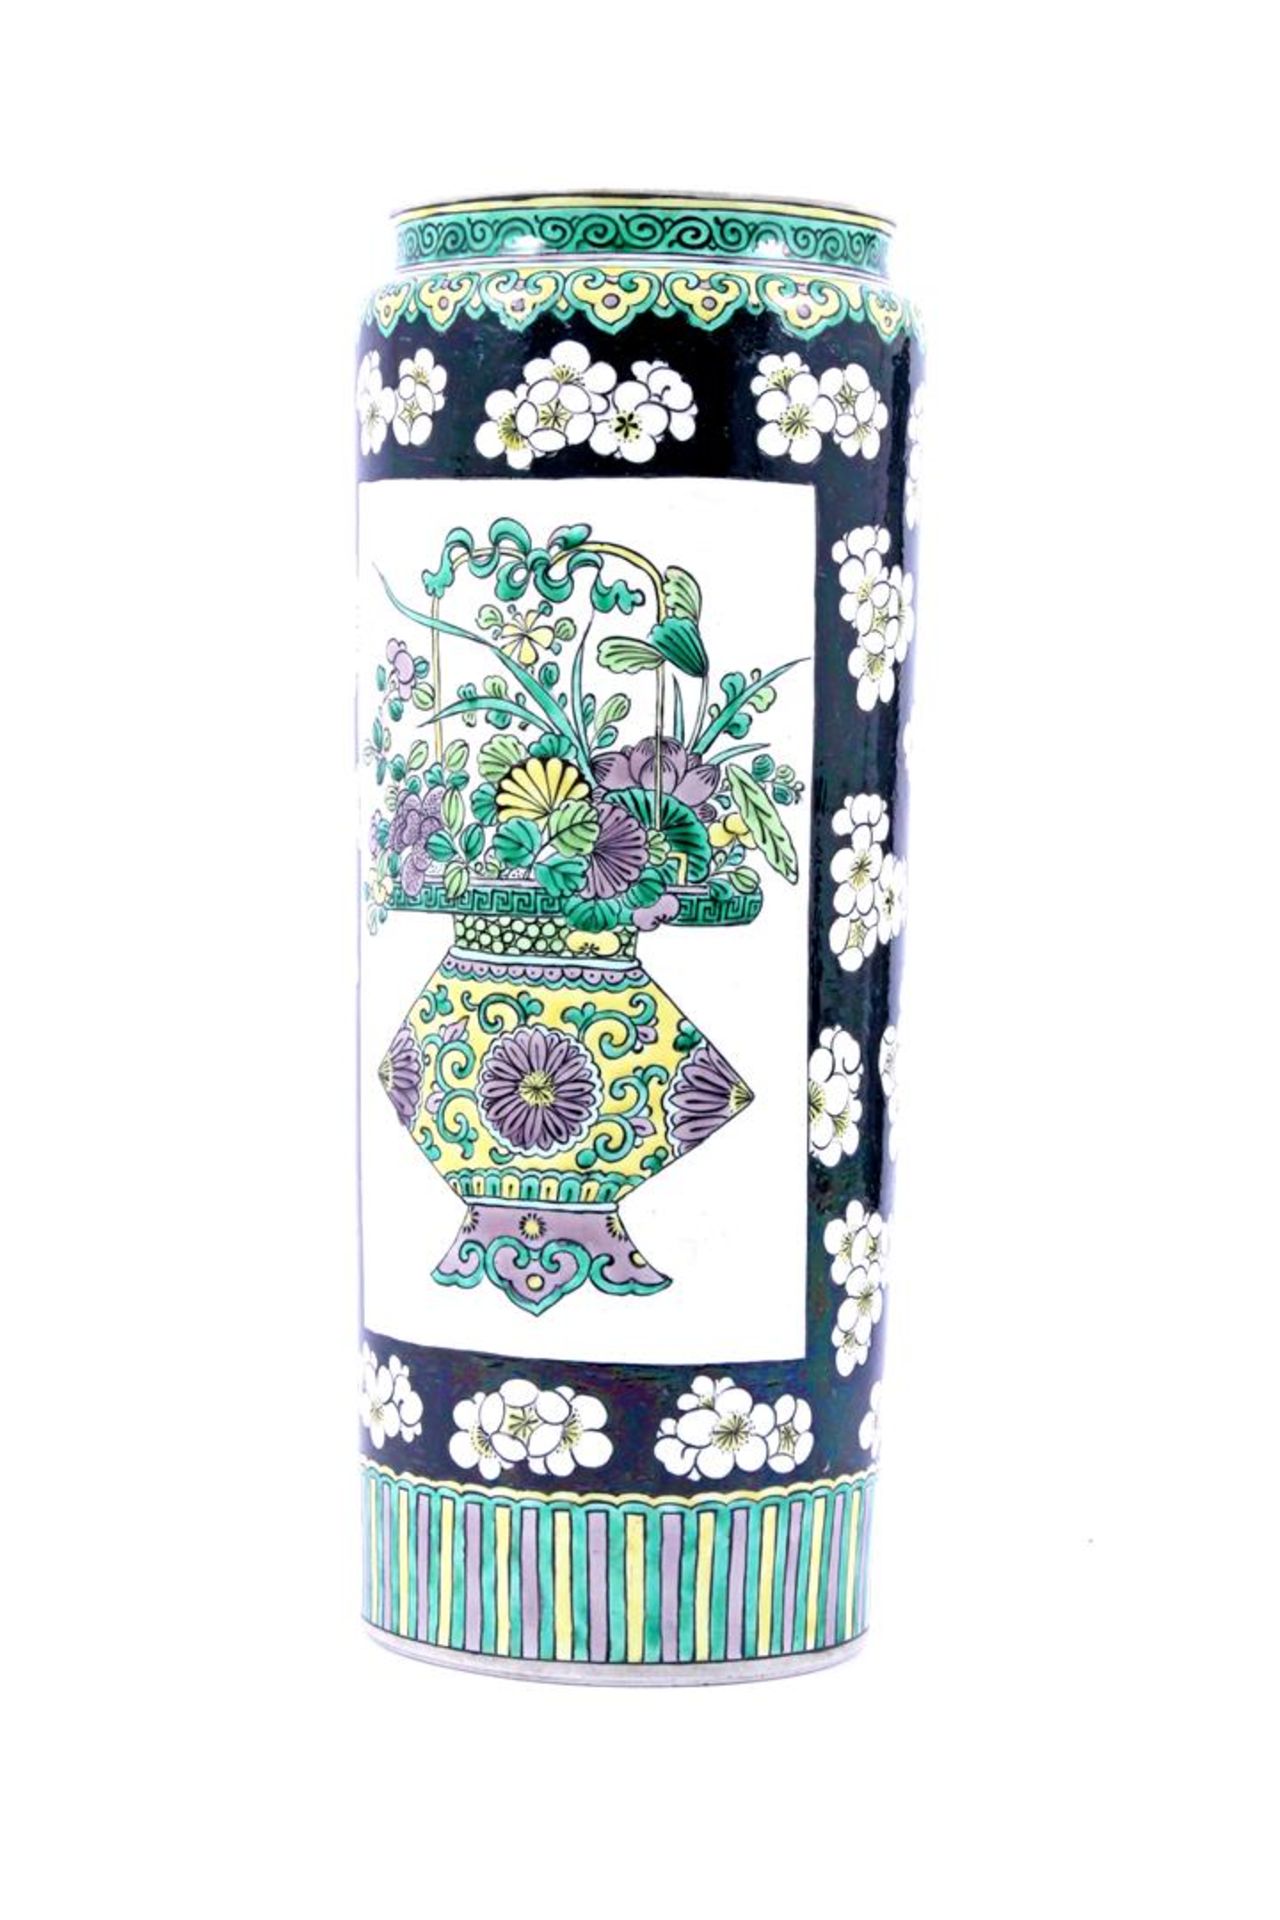 Chinees porseleinen rolvaas met polychroom decor van bloemenvazen met bloemen 35,5 cm hoog - Bild 2 aus 2